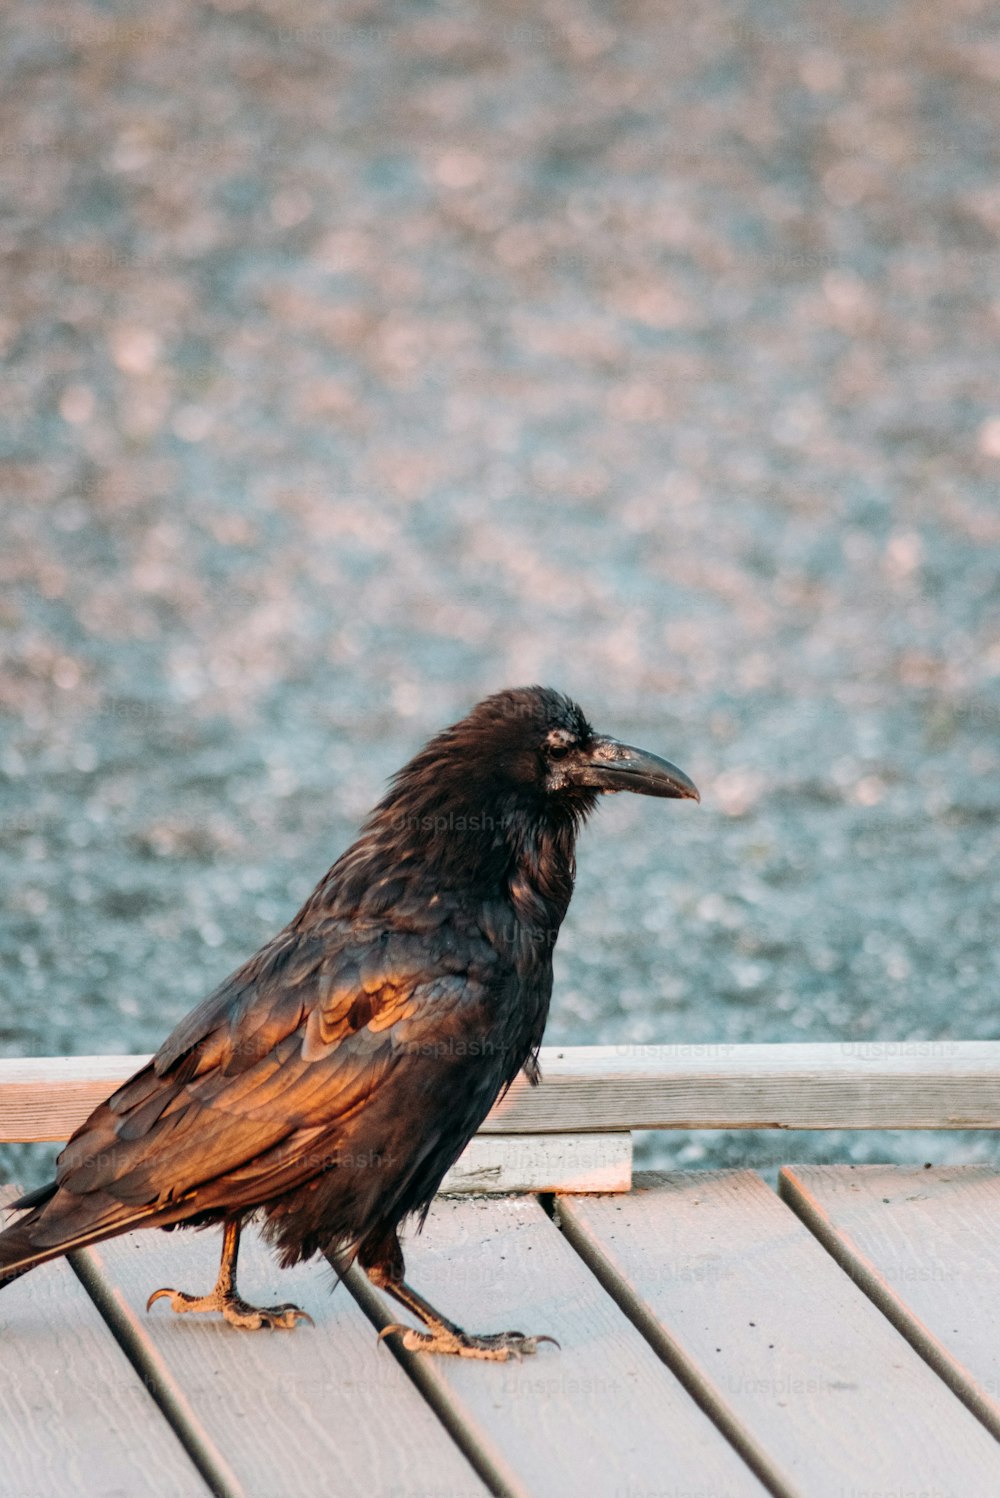 나무 갑판 위에 앉아 있는 검은 새